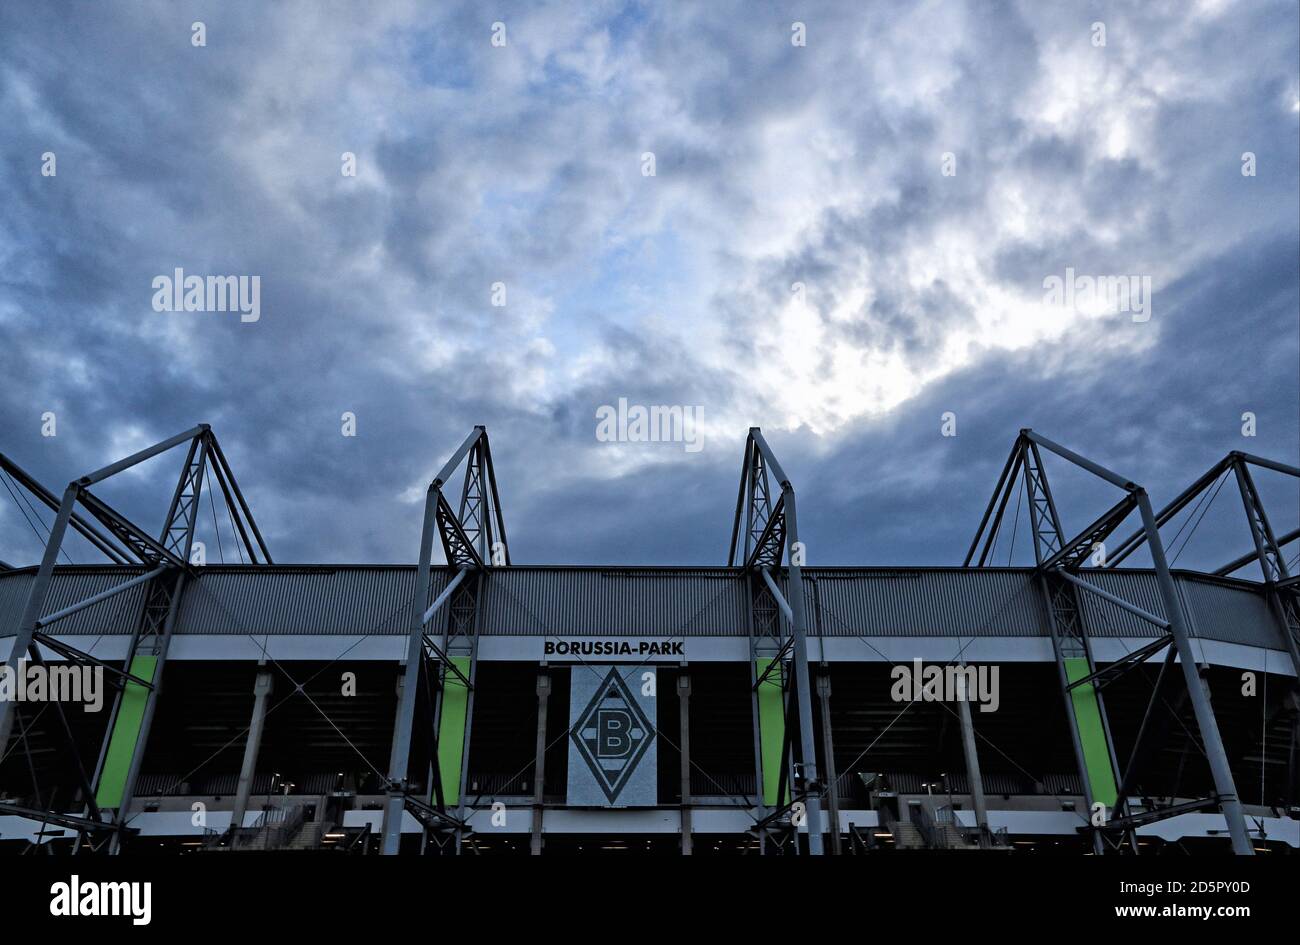 A general view of Borussia Park, home of Borussia Monchengladbach Stock Photo